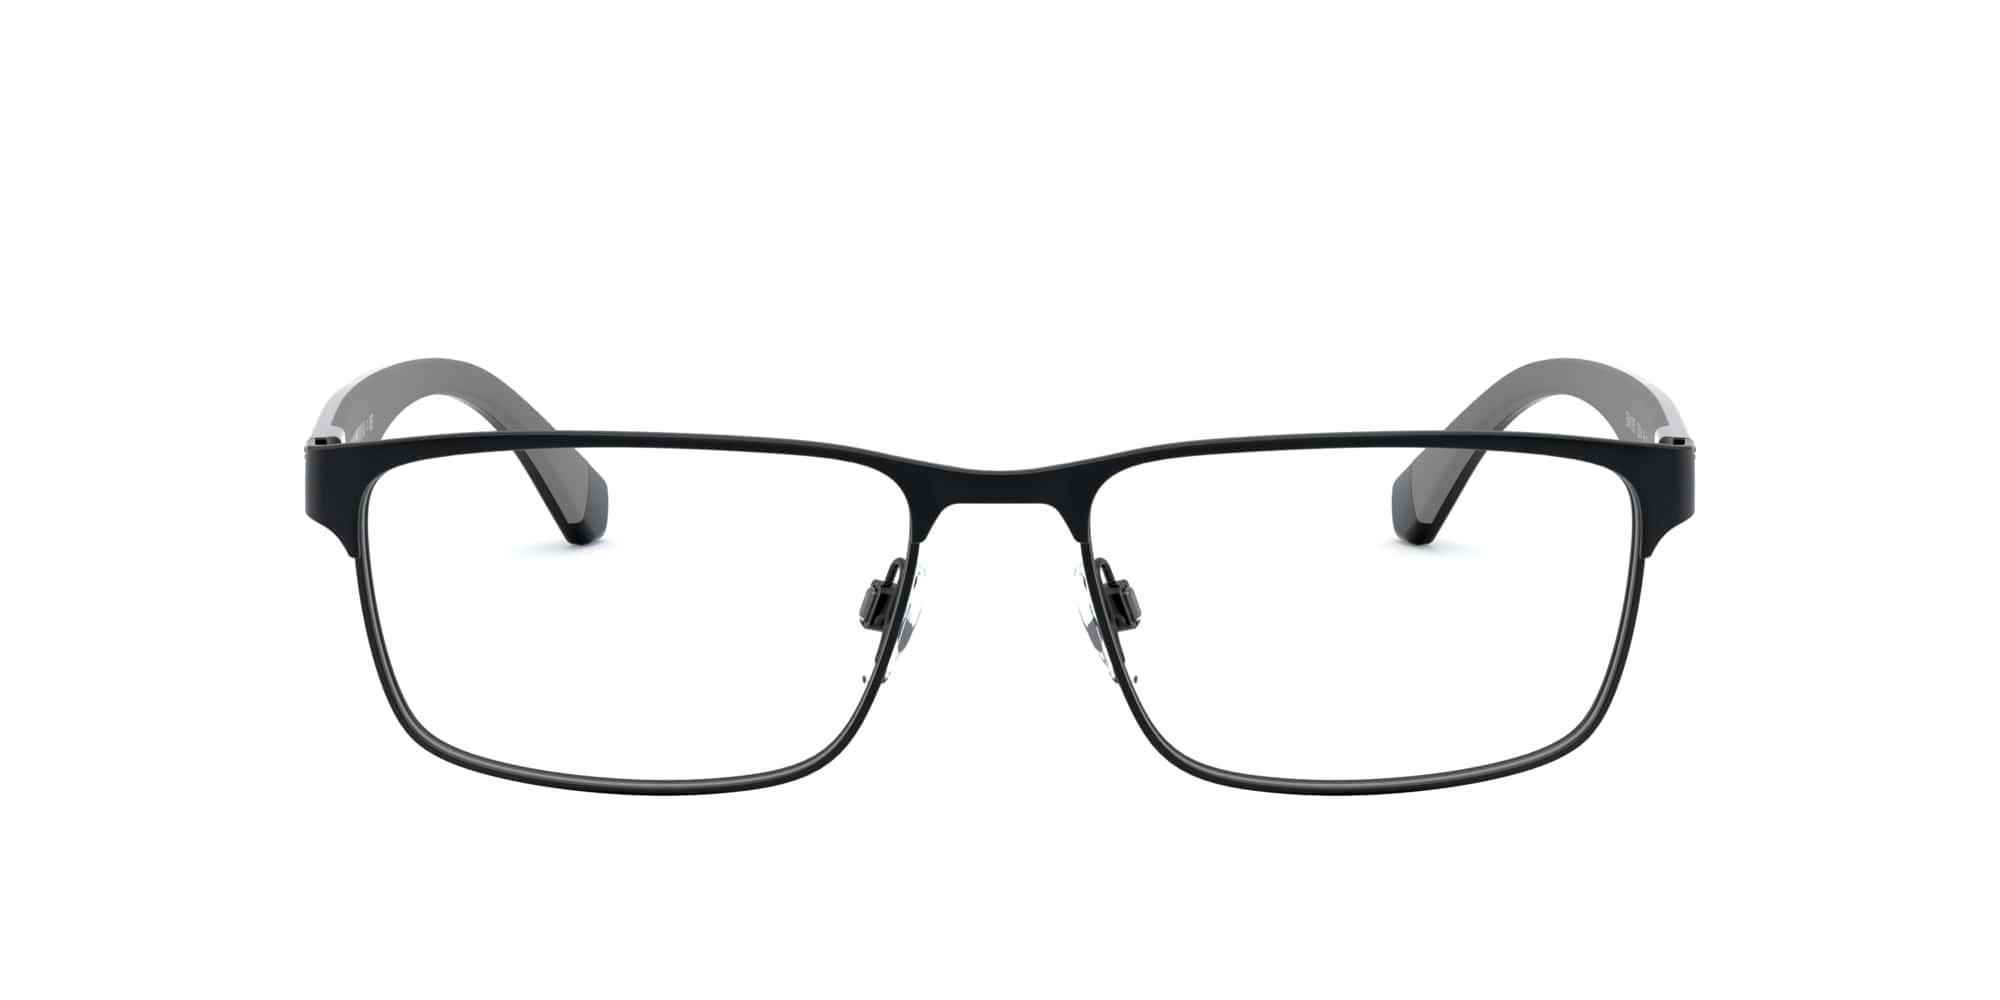 Das Bild zeigt die Korrektionsbrille EA1105 3014 von der Marke Emporio Armani in Schwarz.